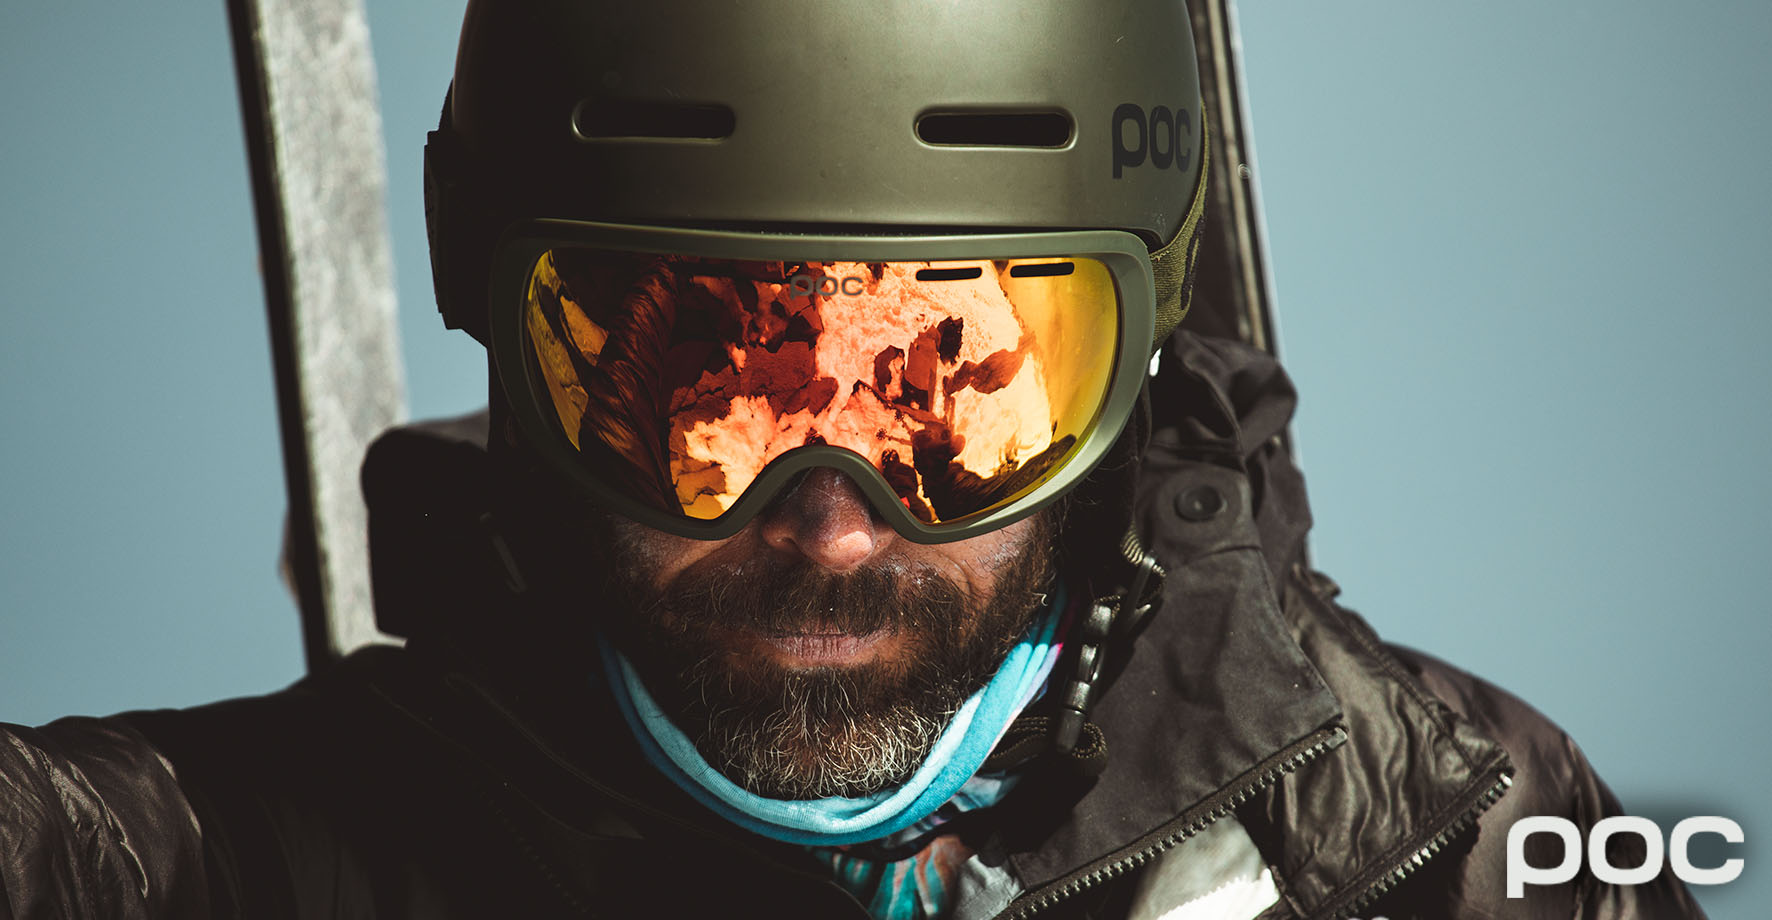 POC Poc OBEX SPIN COMMUNICATION - Ski Helmet - hydrogen white - Private  Sport Shop